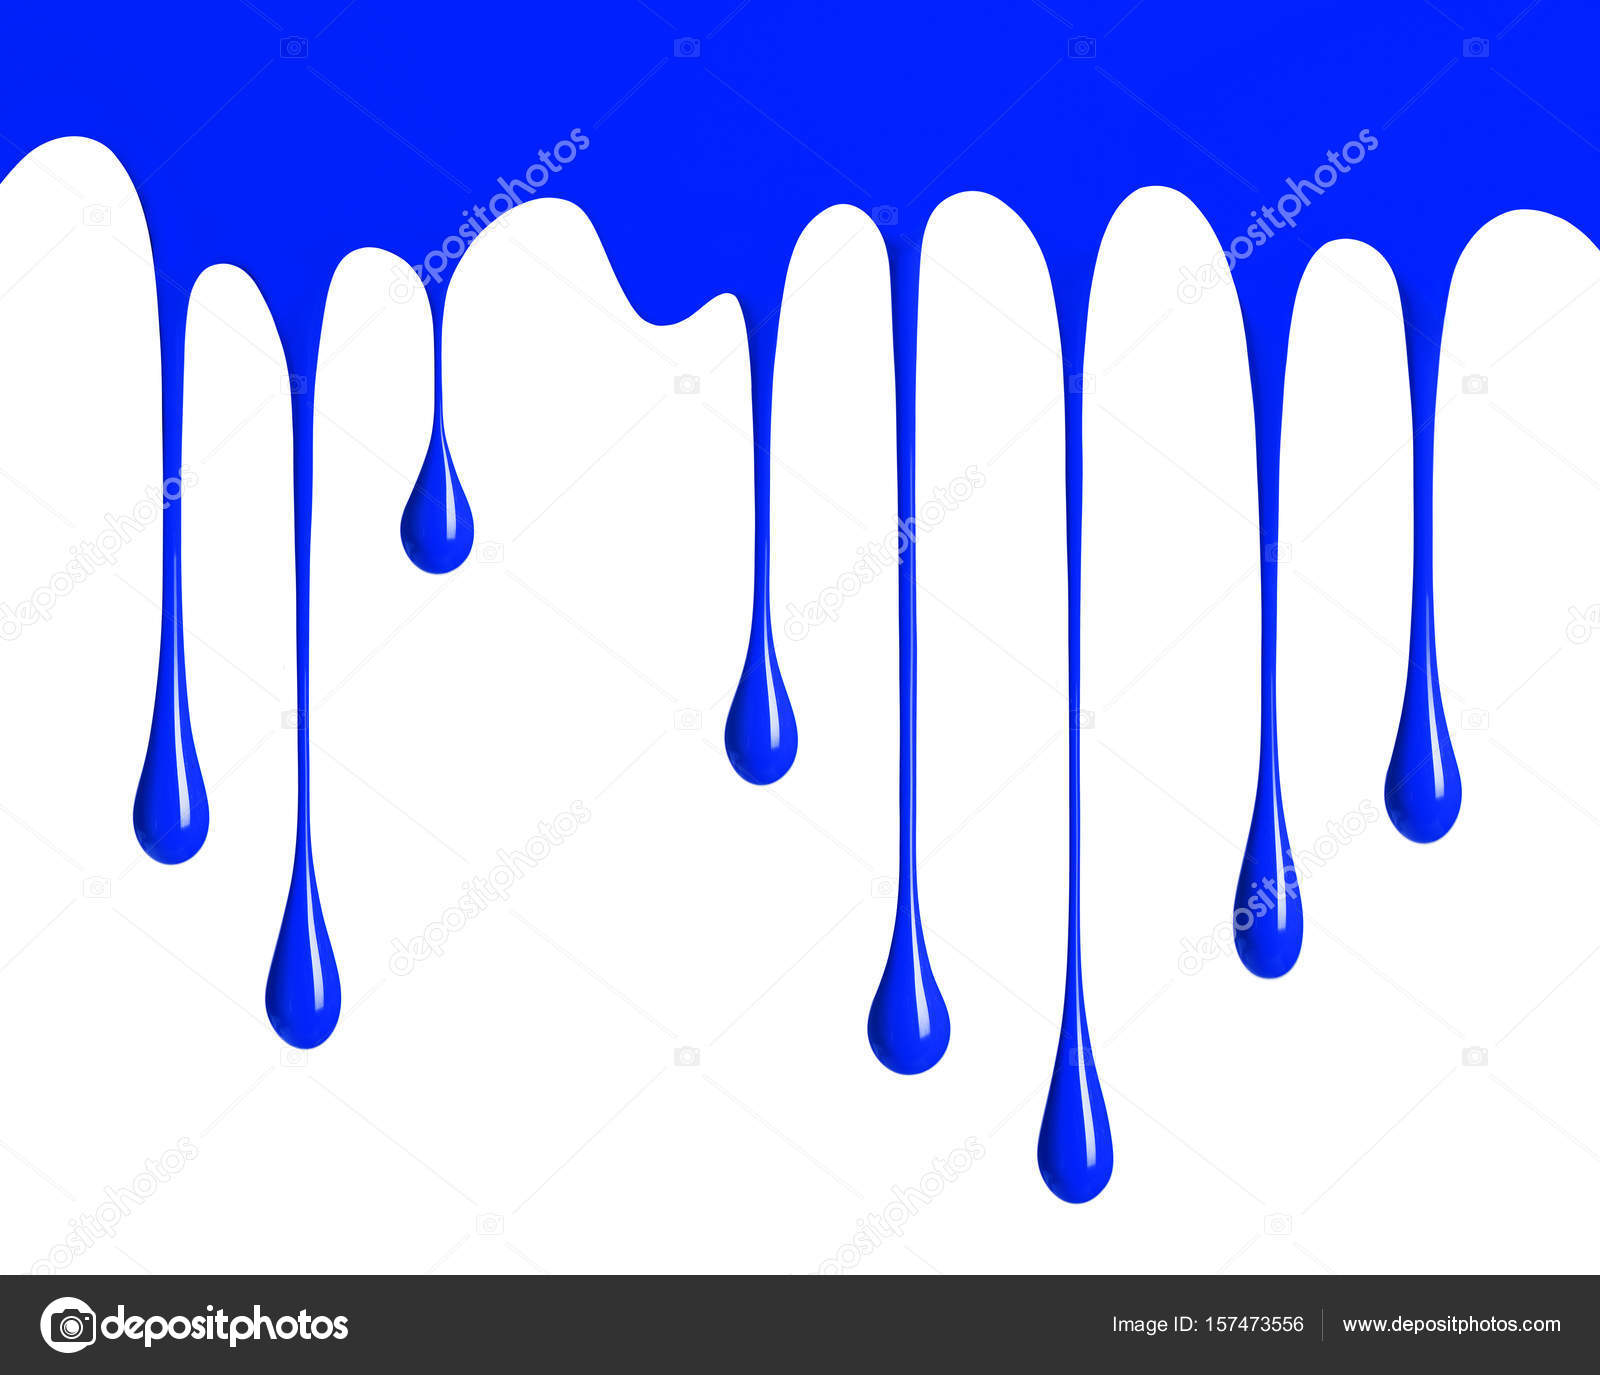 blue paint dripping wallpaper